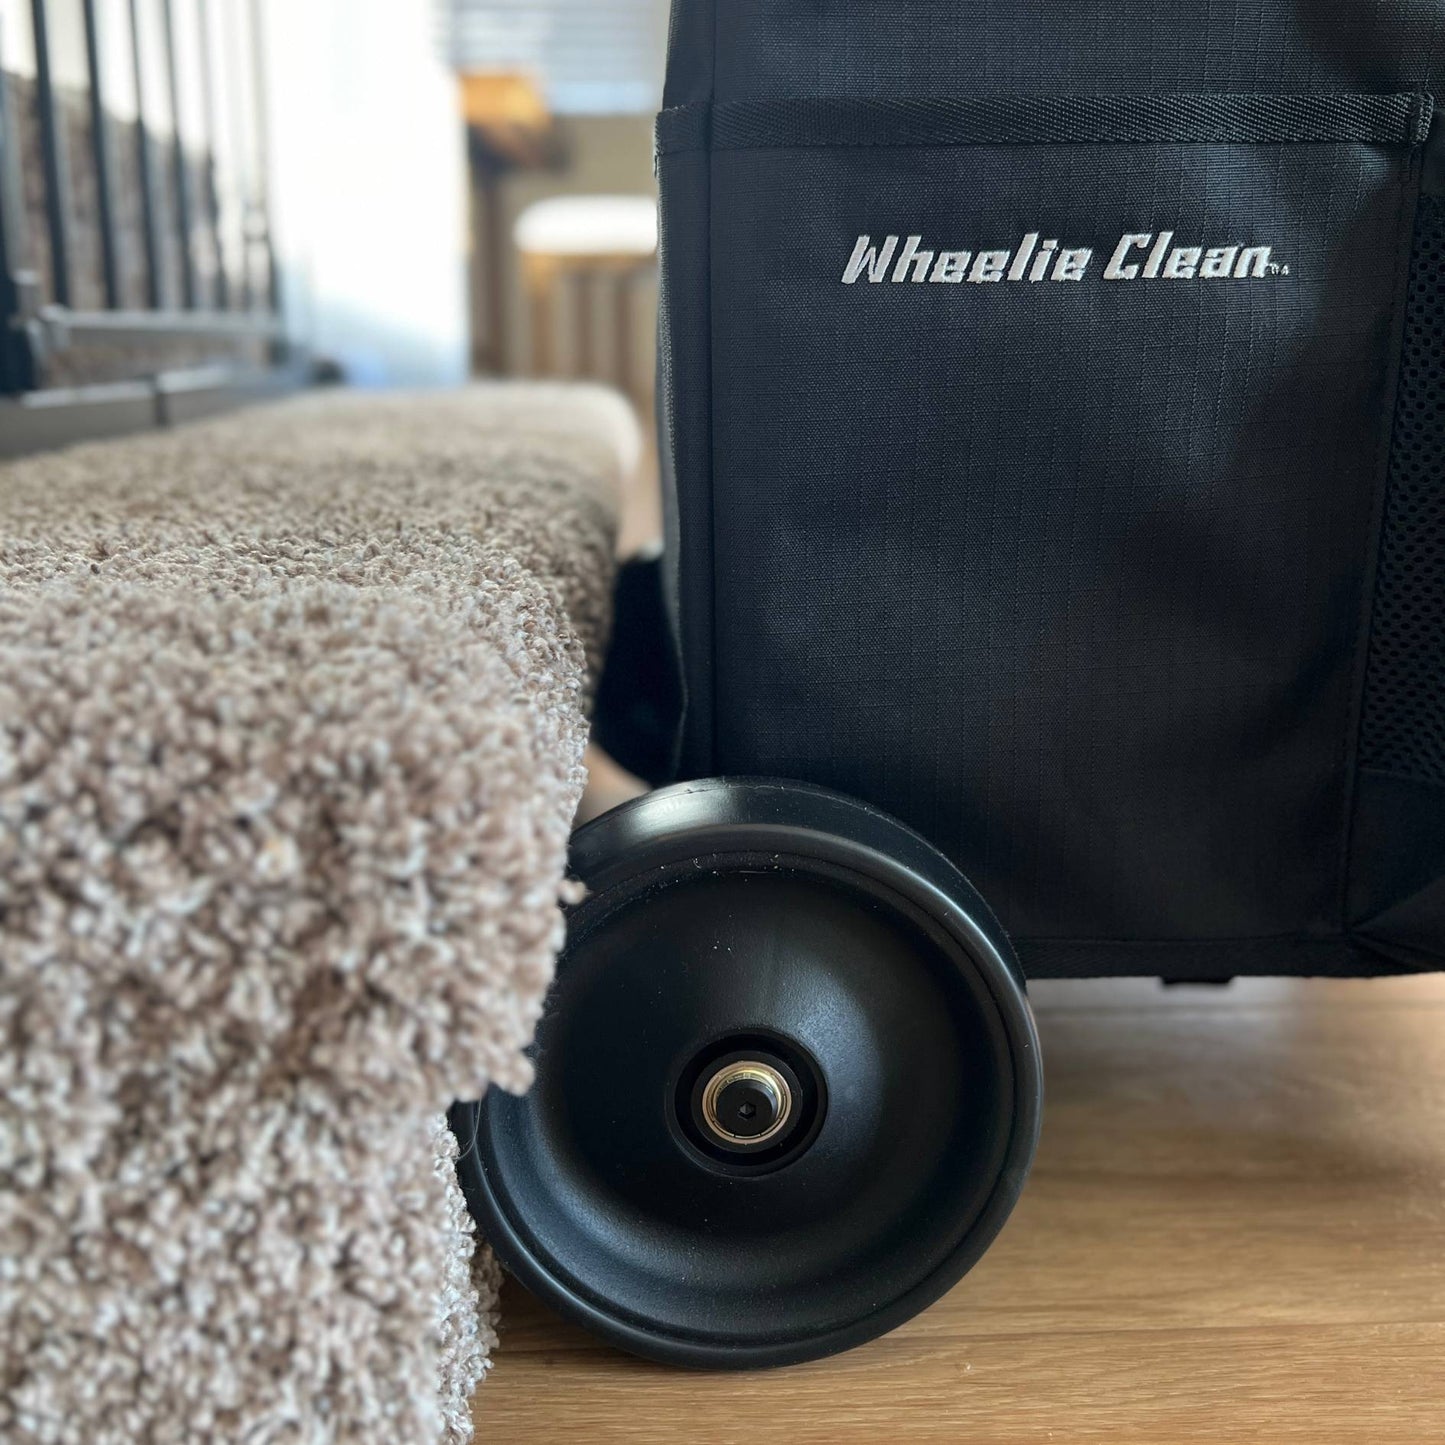 Wheelie Clean: Stair-Climbing Caddy